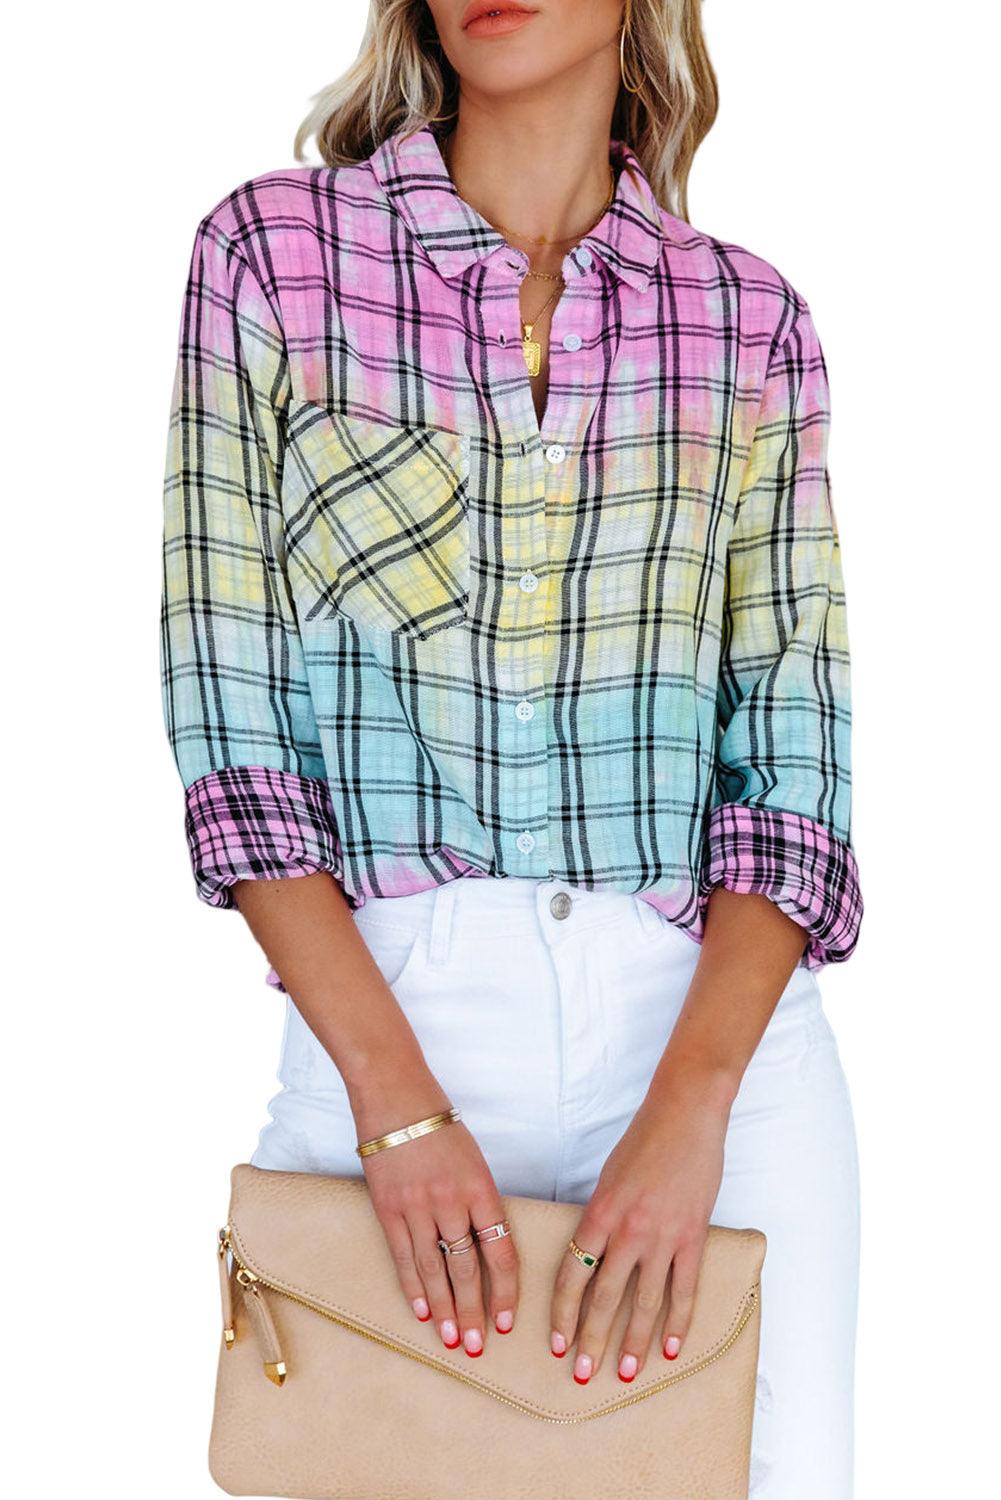 Multicolor Tie Dye Plaid Button Up Shirt - L & M Kee, LLC